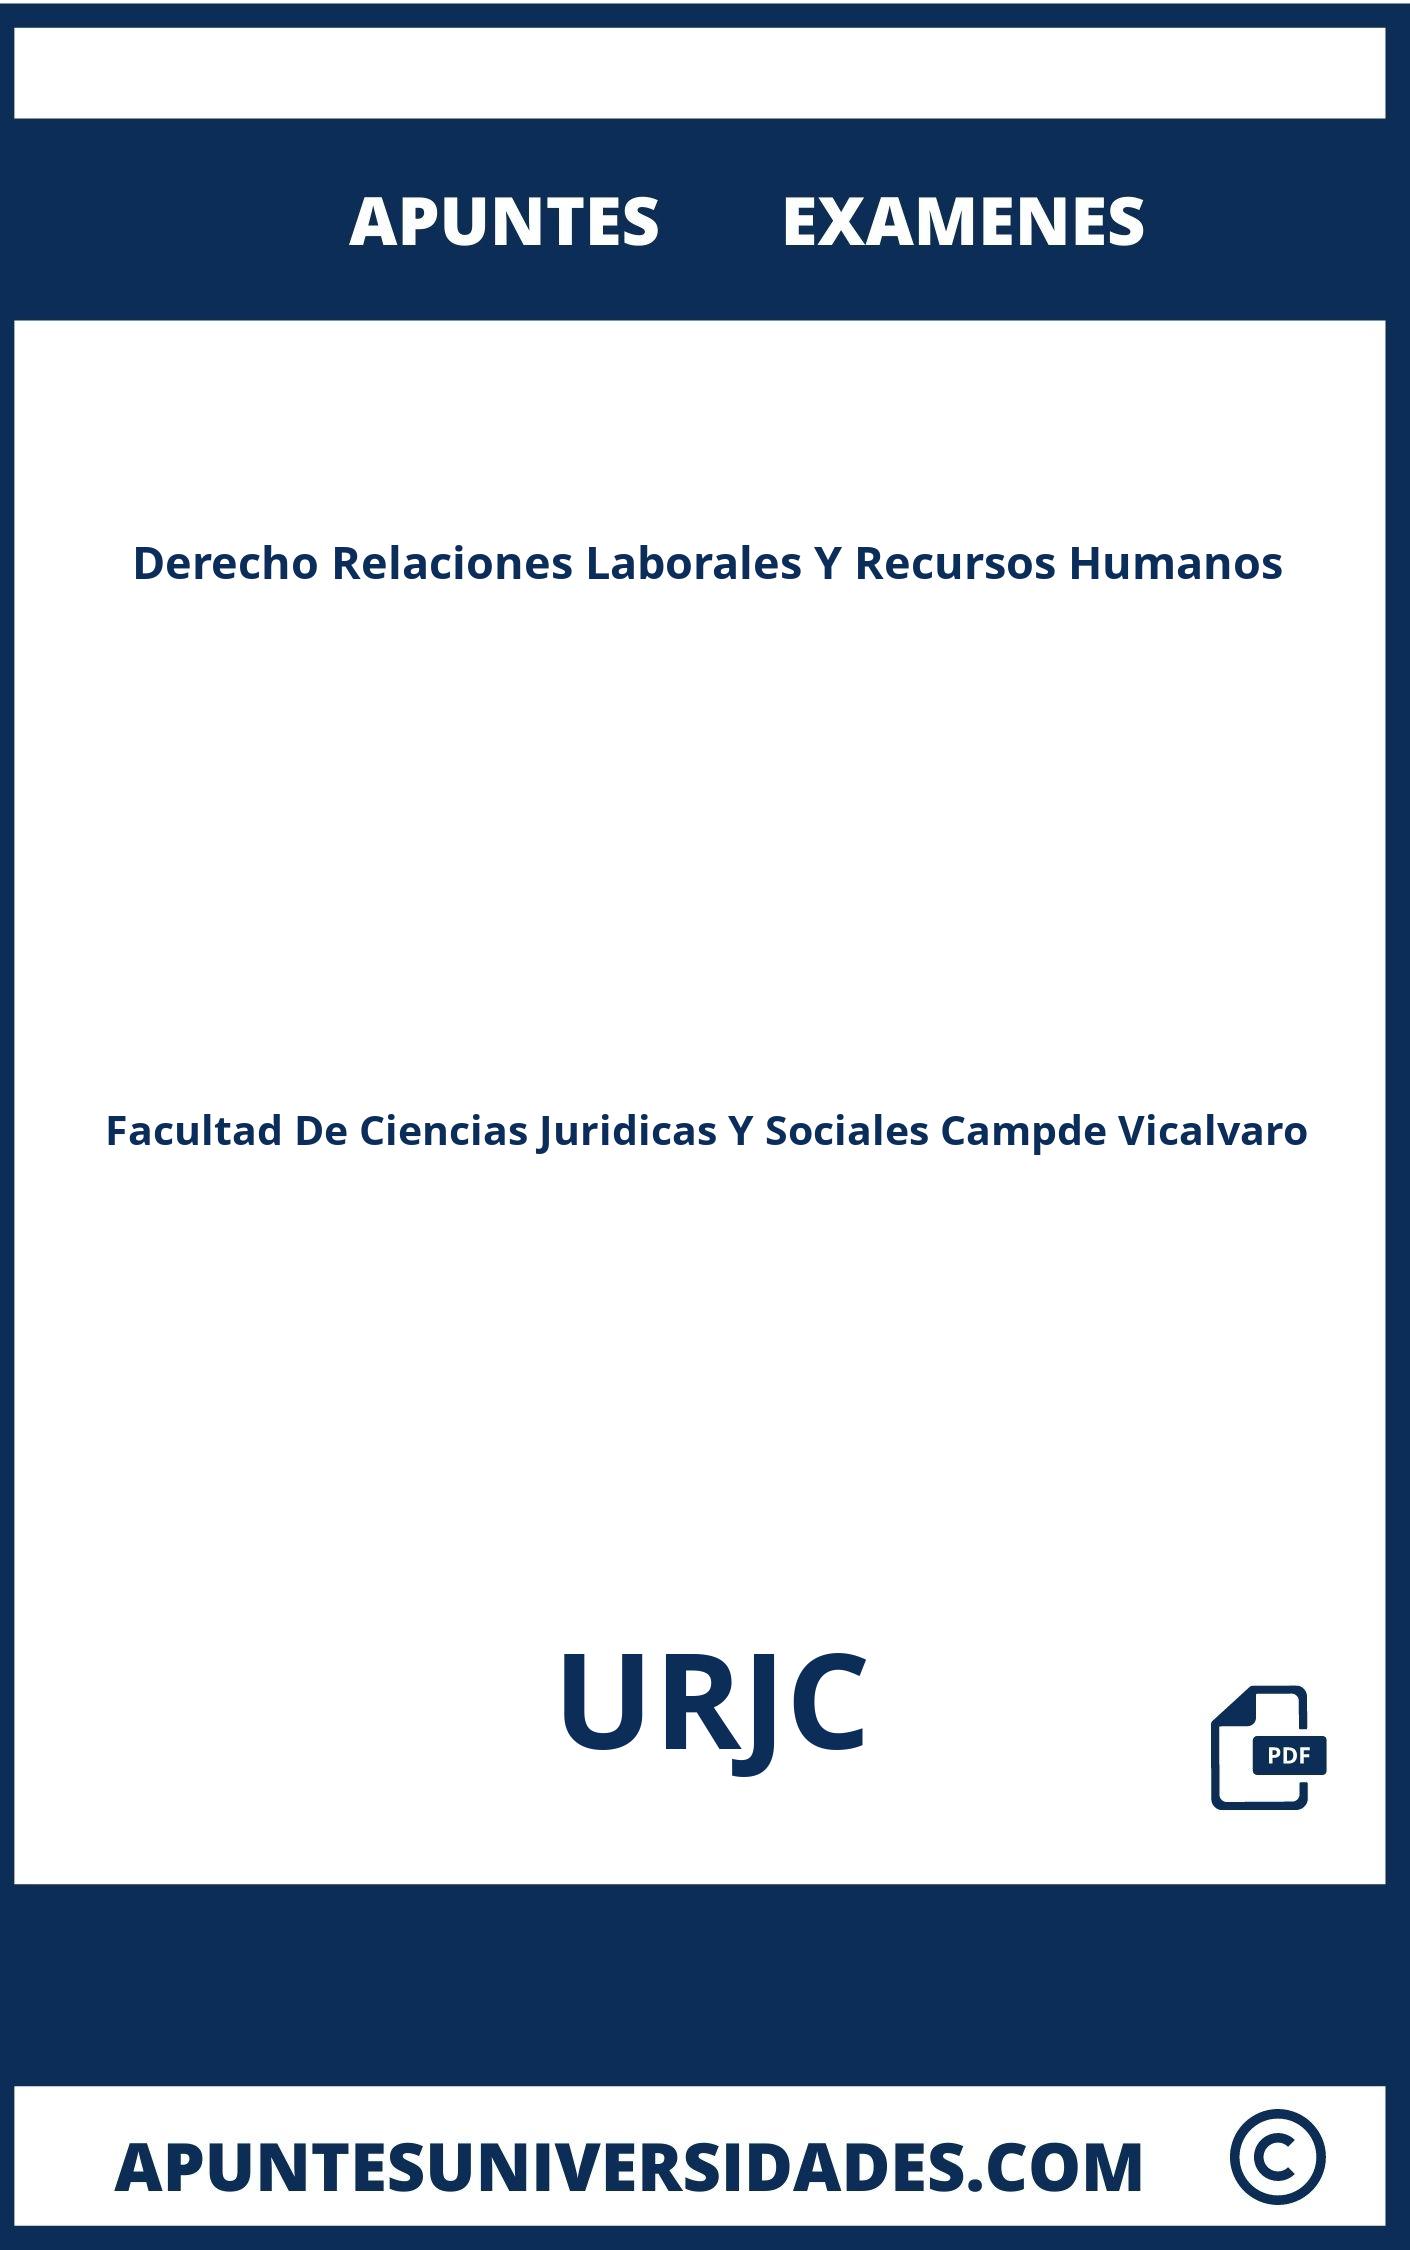 Derecho Relaciones Laborales Y Recursos Humanos URJC Examenes Apuntes